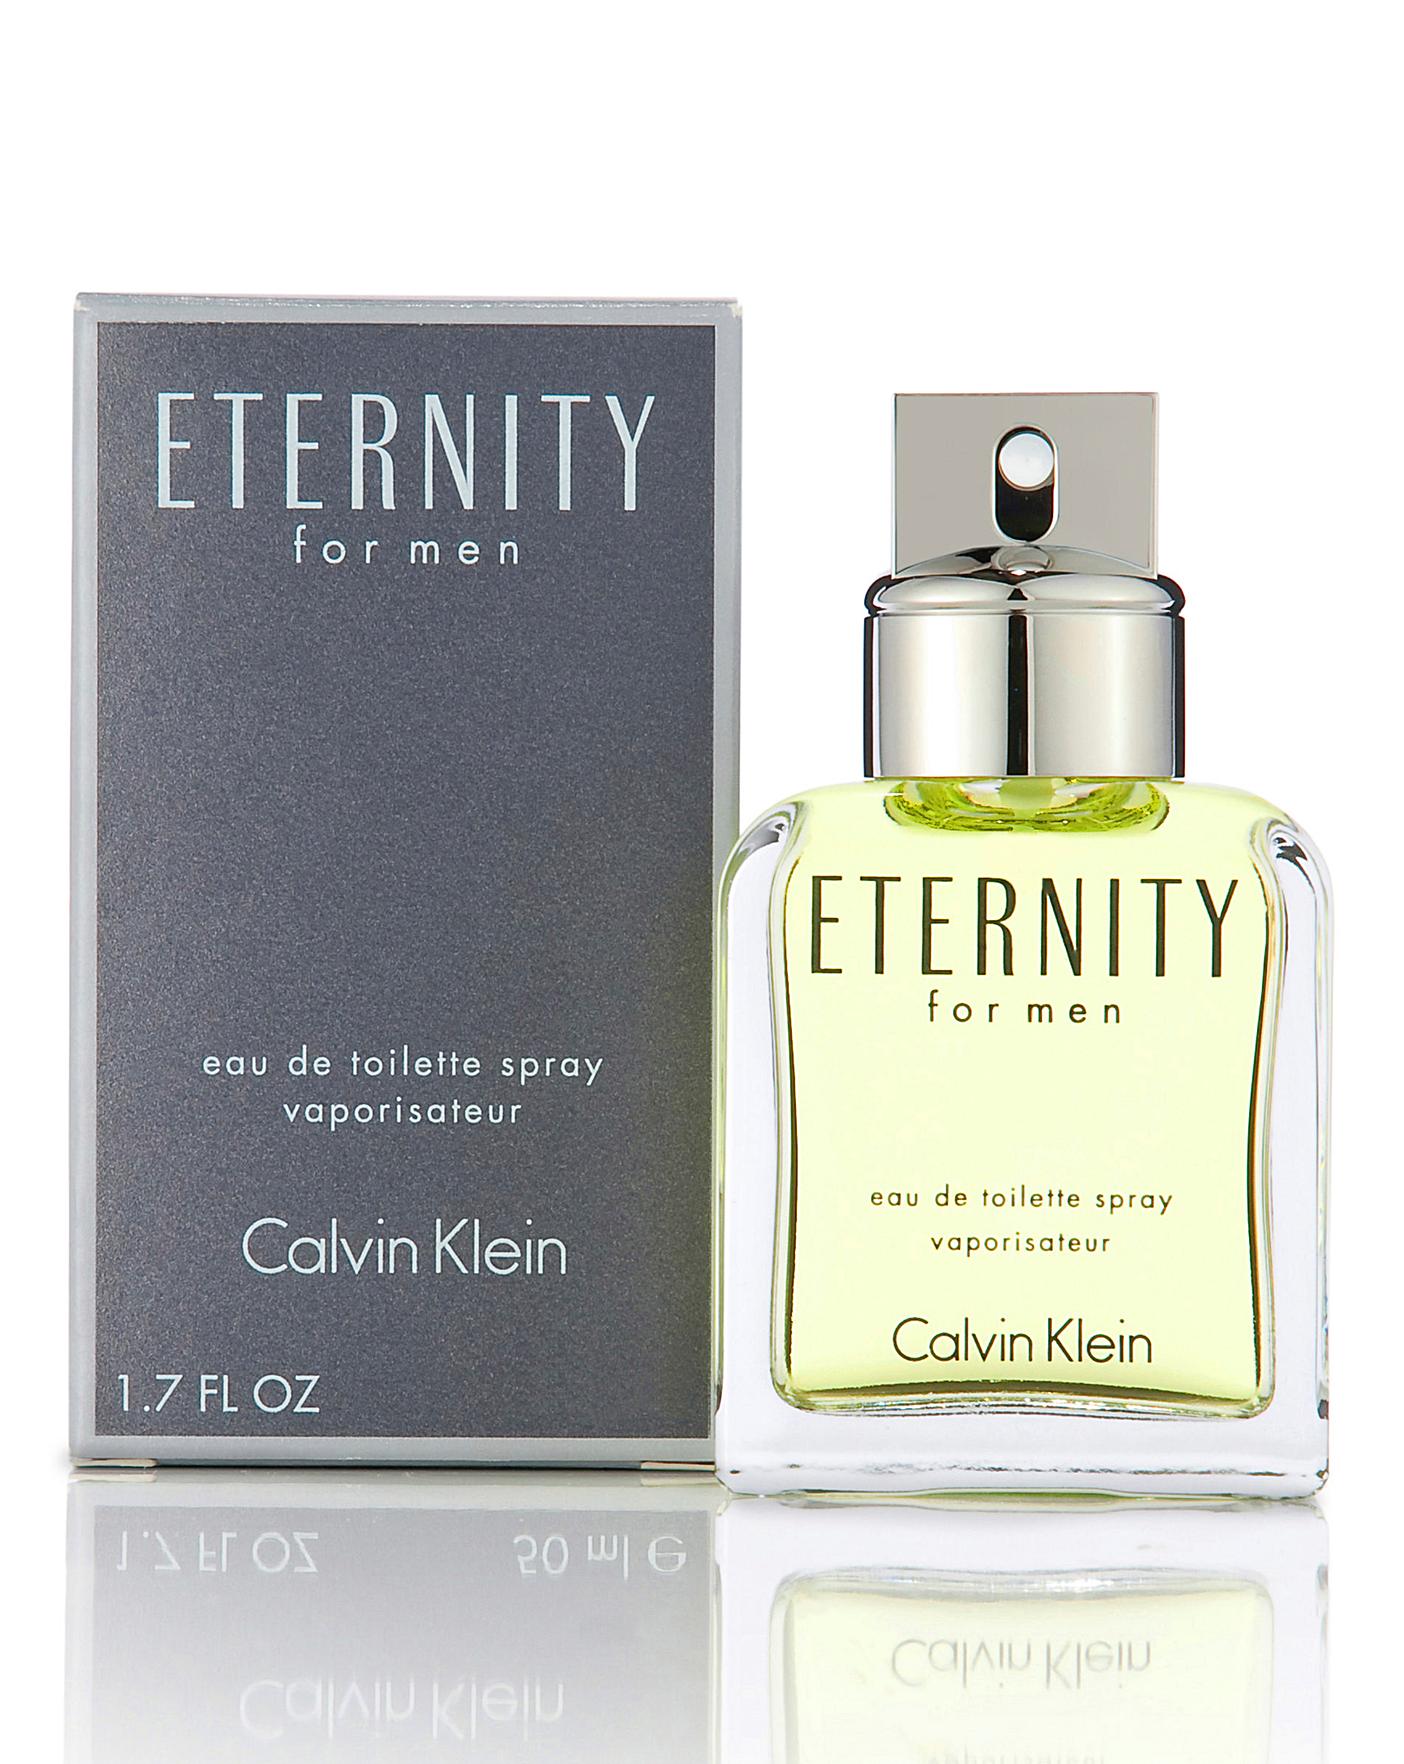 eternity men by calvin klein